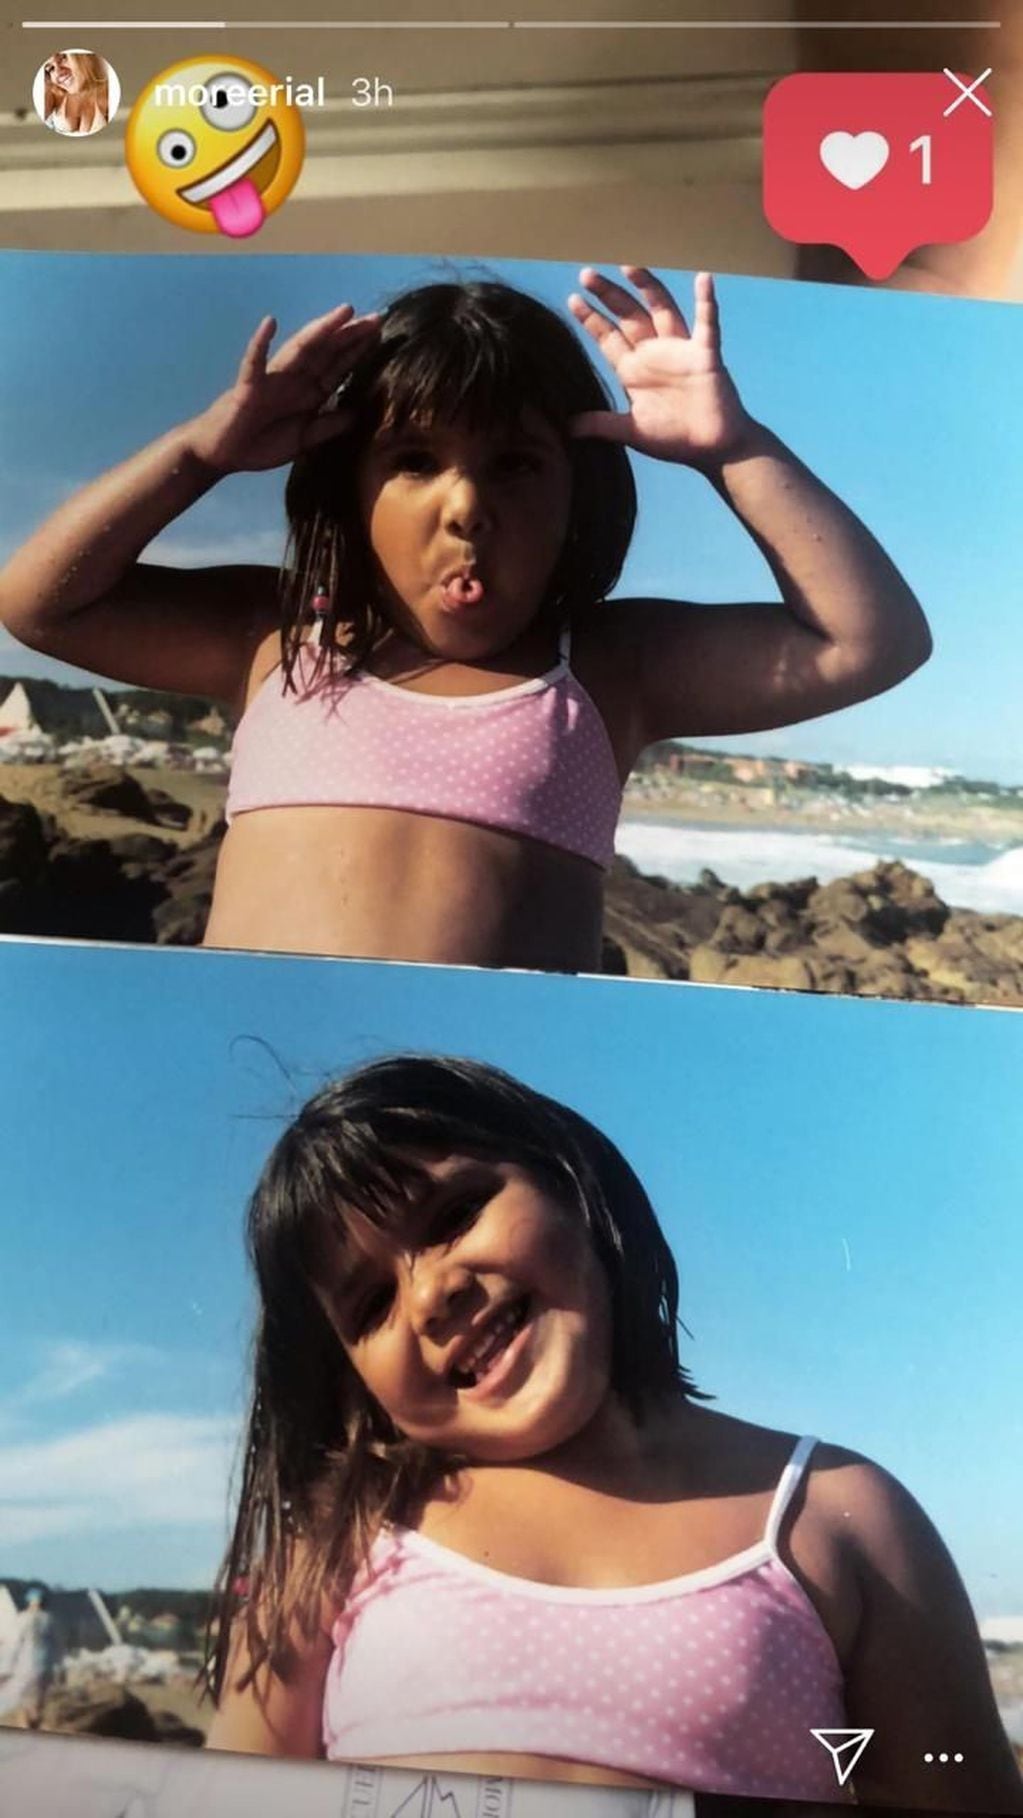 More Rial publicó dos fotos de su infancia